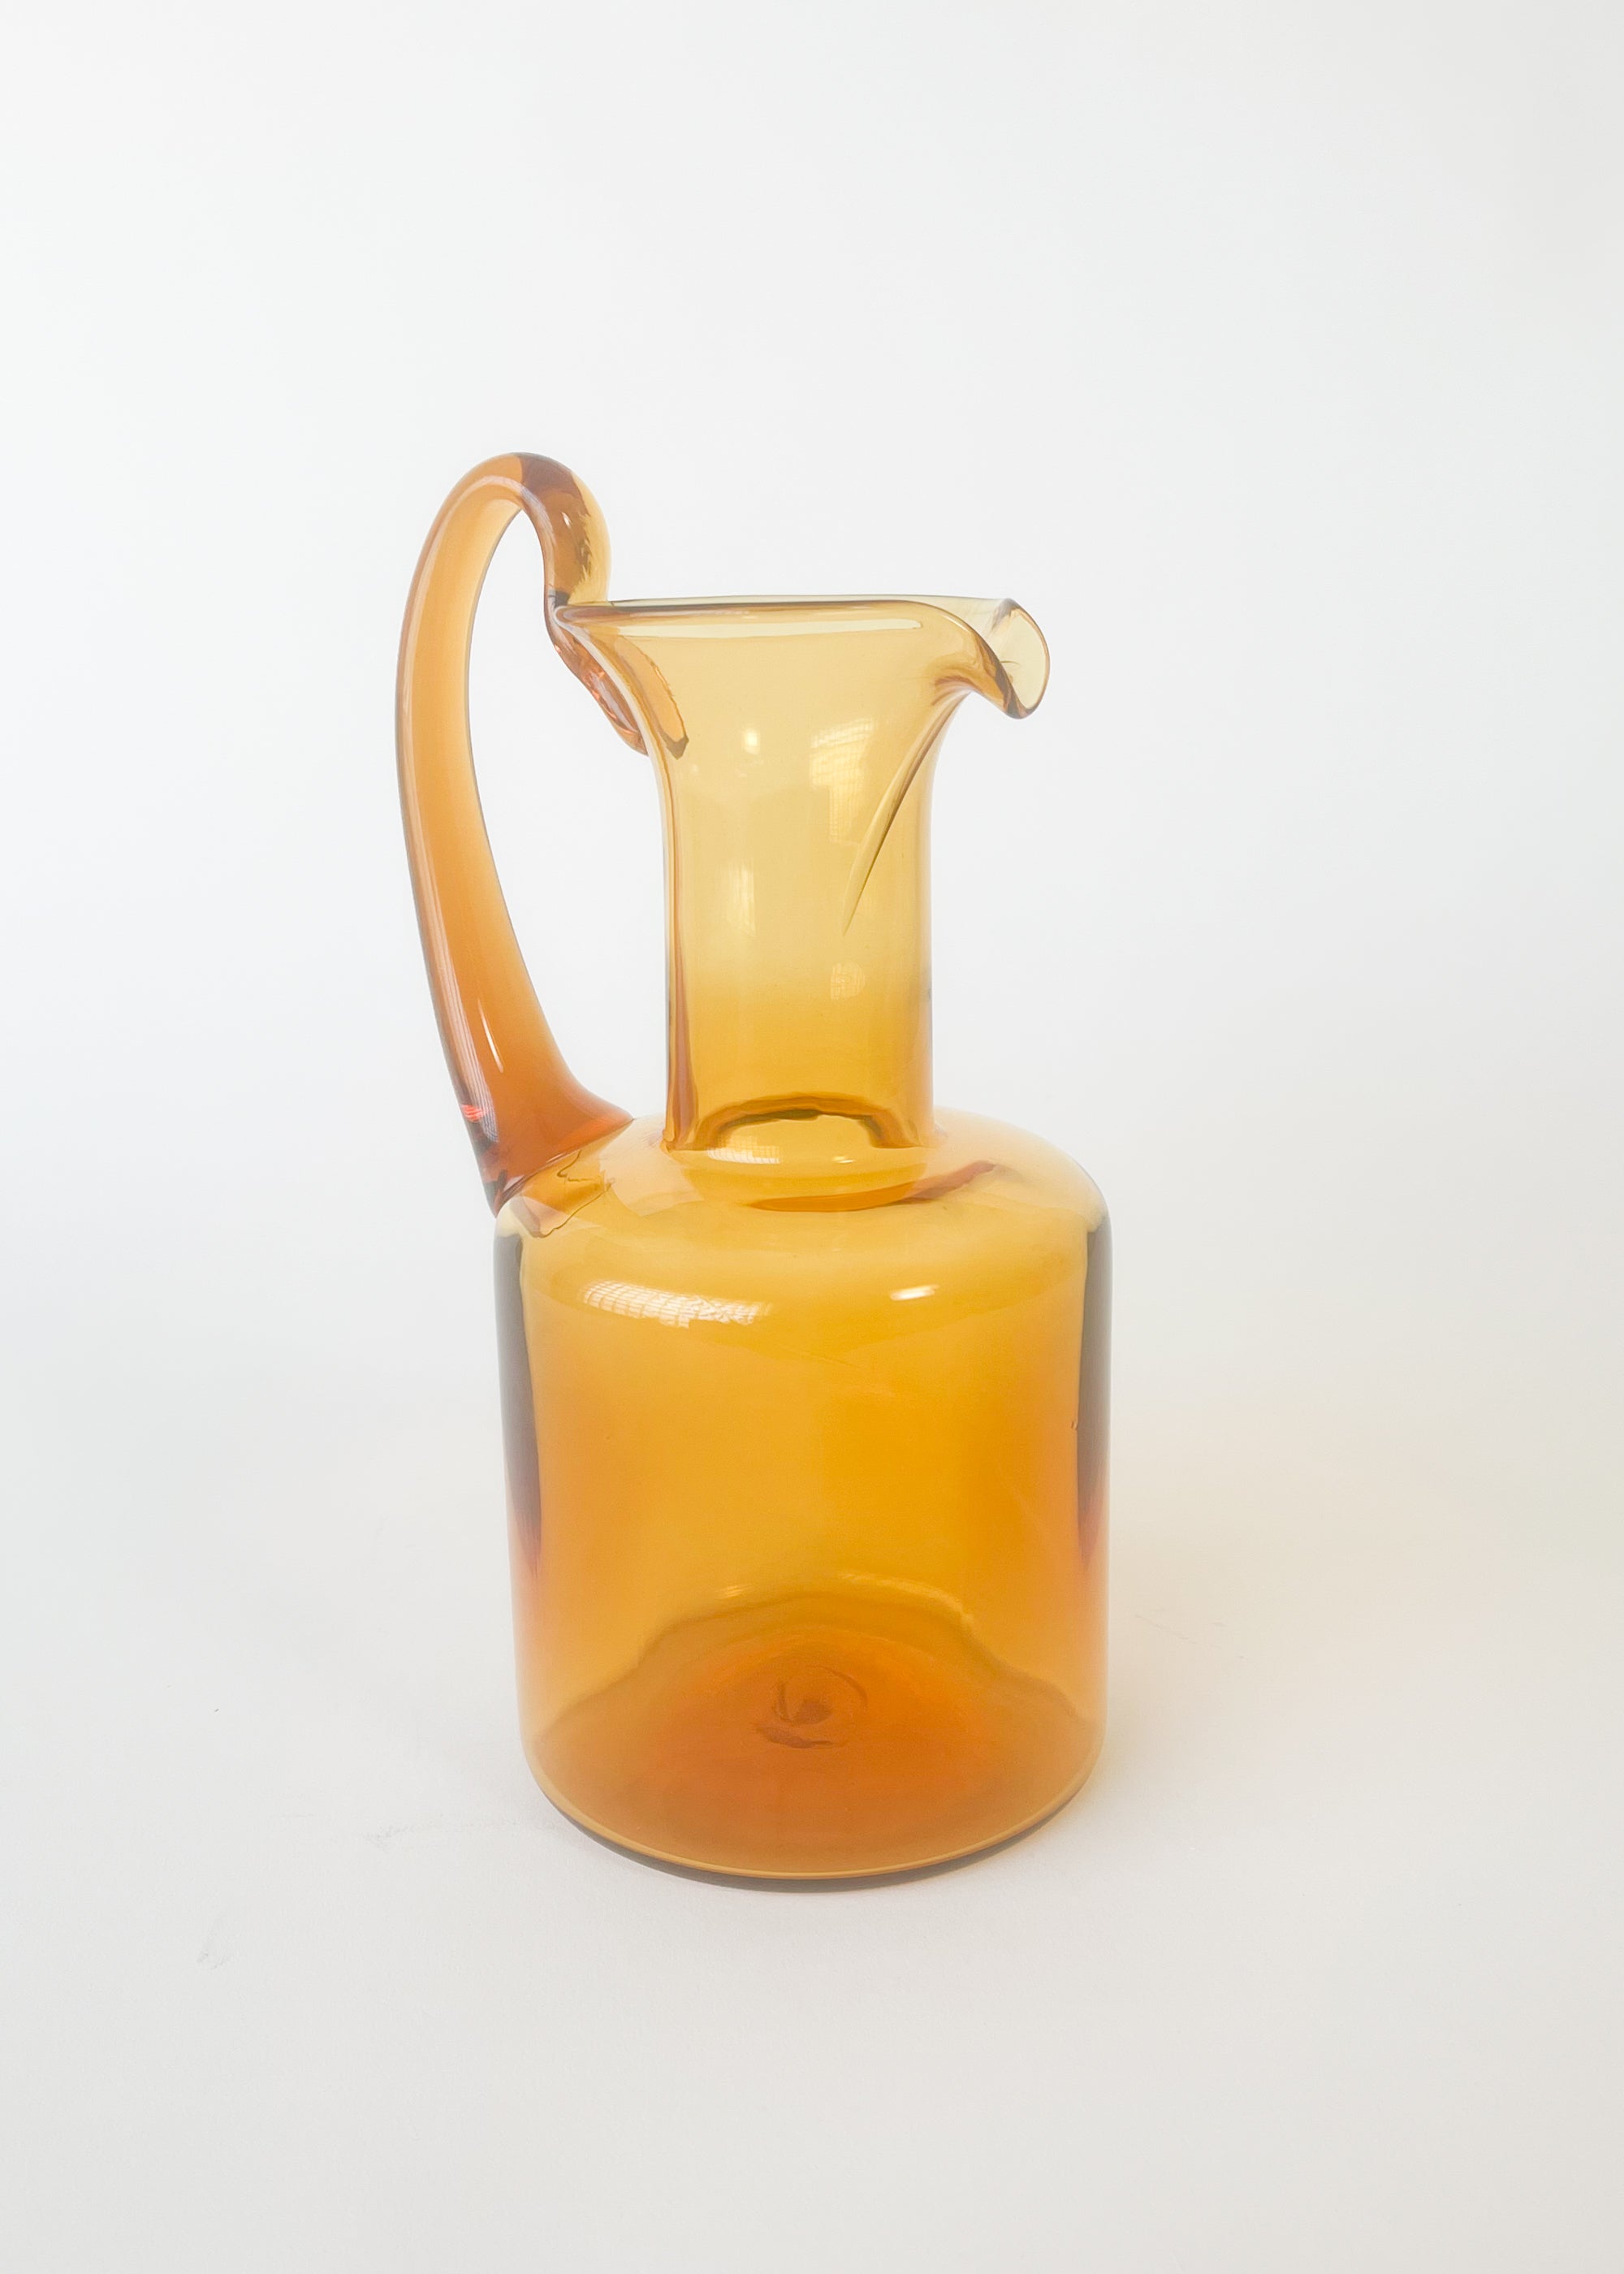 SOLD, MCM Anchor Hocking Glass Orange Juice Pitcher 7.5 inches tall. #mcm  #midcentury #mcmkitchen #vintagekitchen #orangejuice…